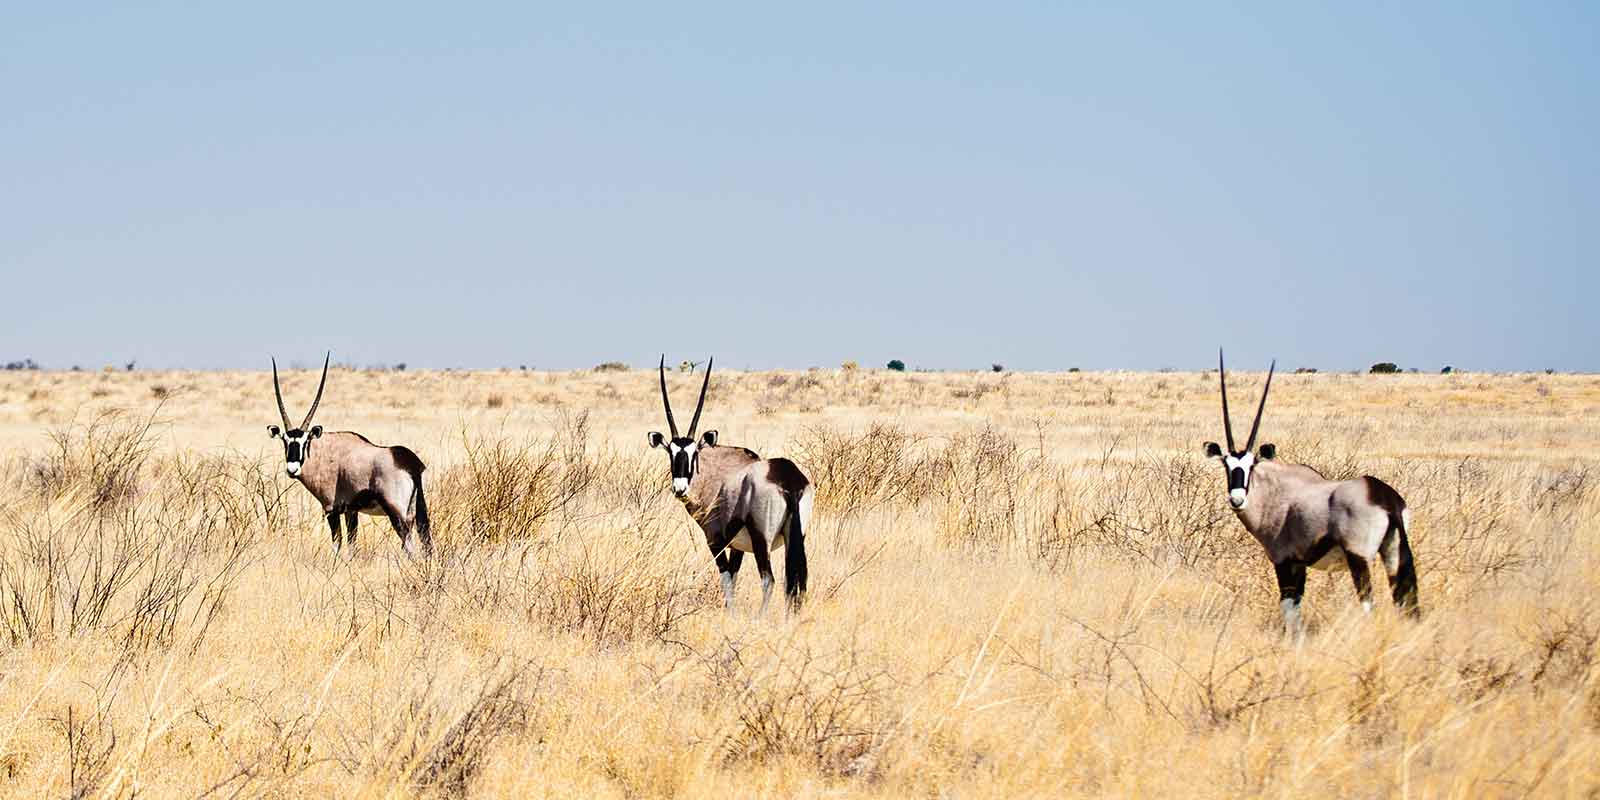 Group of oryx in the Kalahari Desert, Botswana